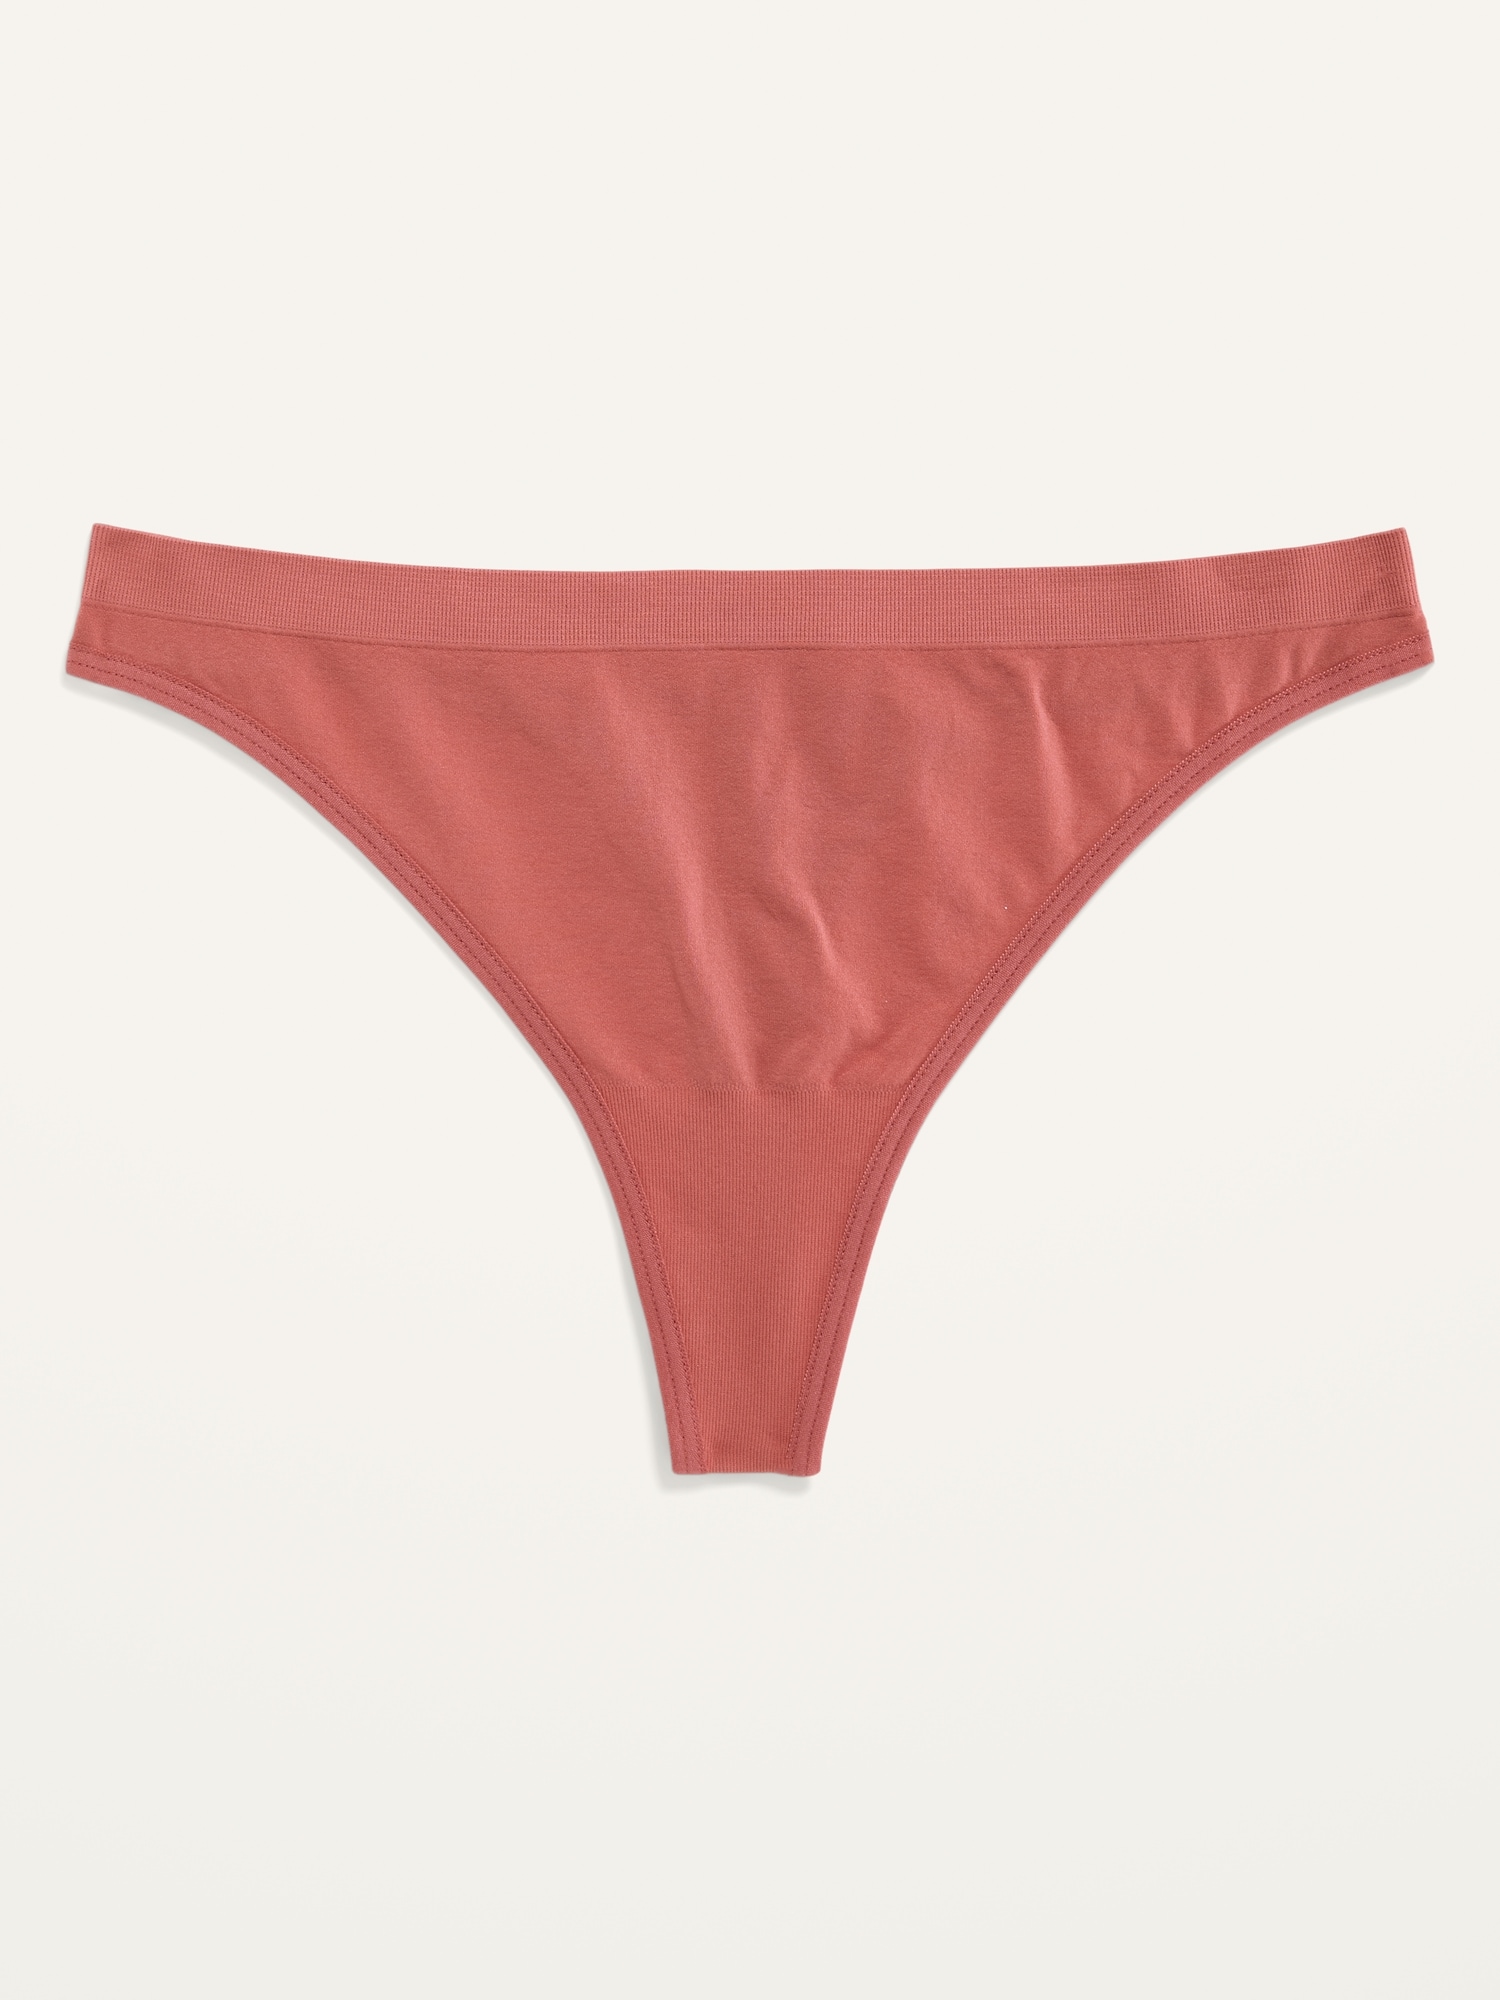 High-Waisted French-Cut Lace Bikini Underwear